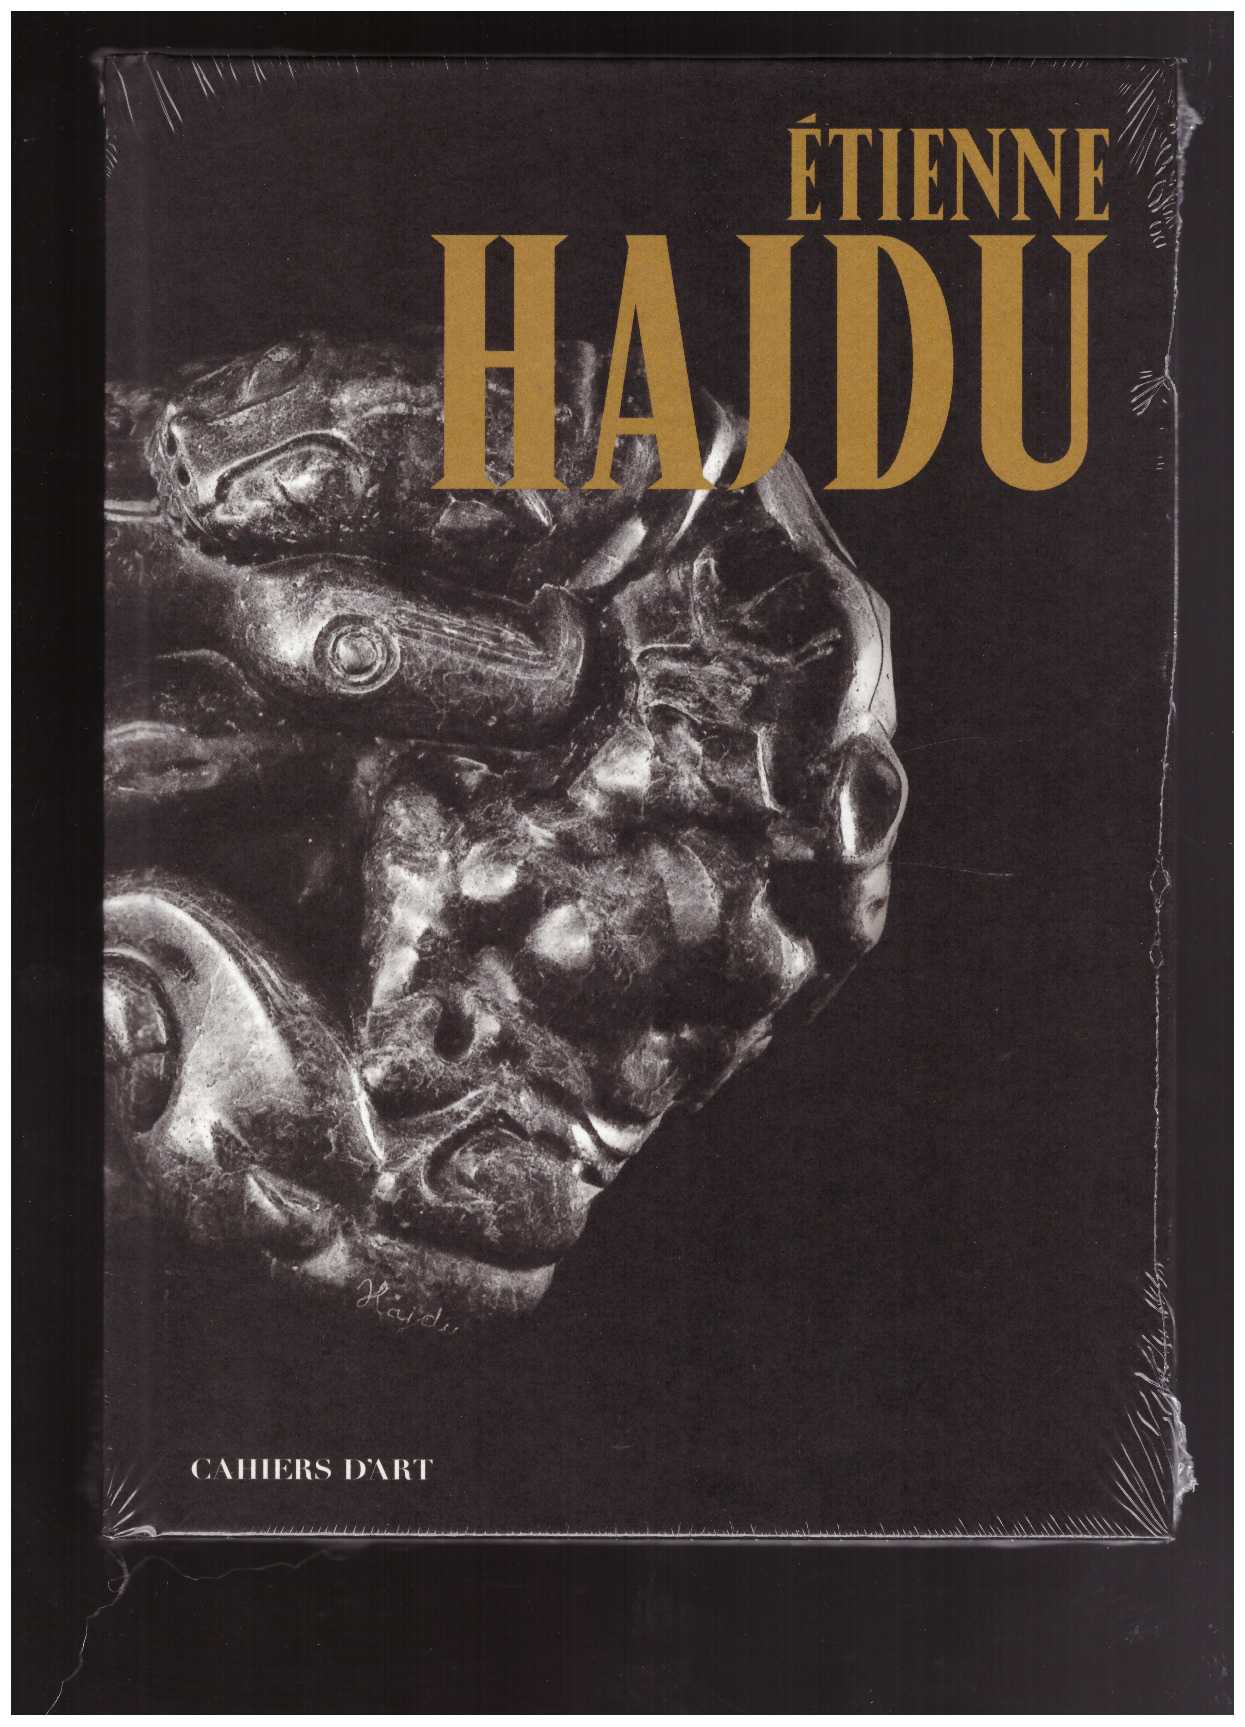 HAJDU, Etienne; FOURNILLON-COURANT, Caroline (ed.) - Étienne Hajdu